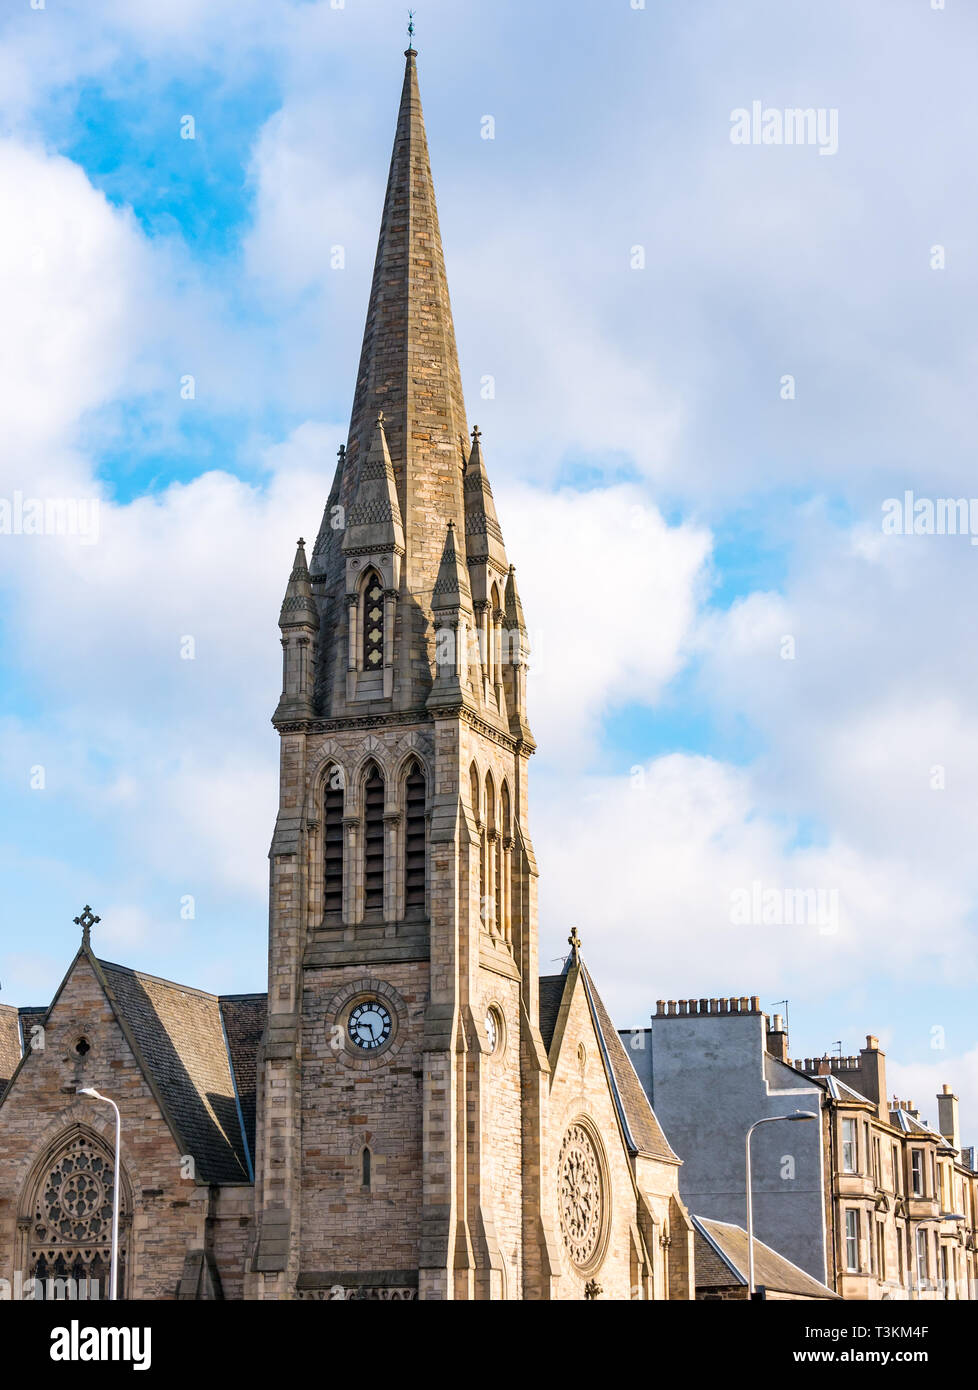 Turm der Viktorianischen Pilrig St Paul's Kirche von Schottland, französischen gotischen Stil durch Peddie & Kinnear, Leith Walk, Edinburgh, Schottland, Großbritannien Stockfoto